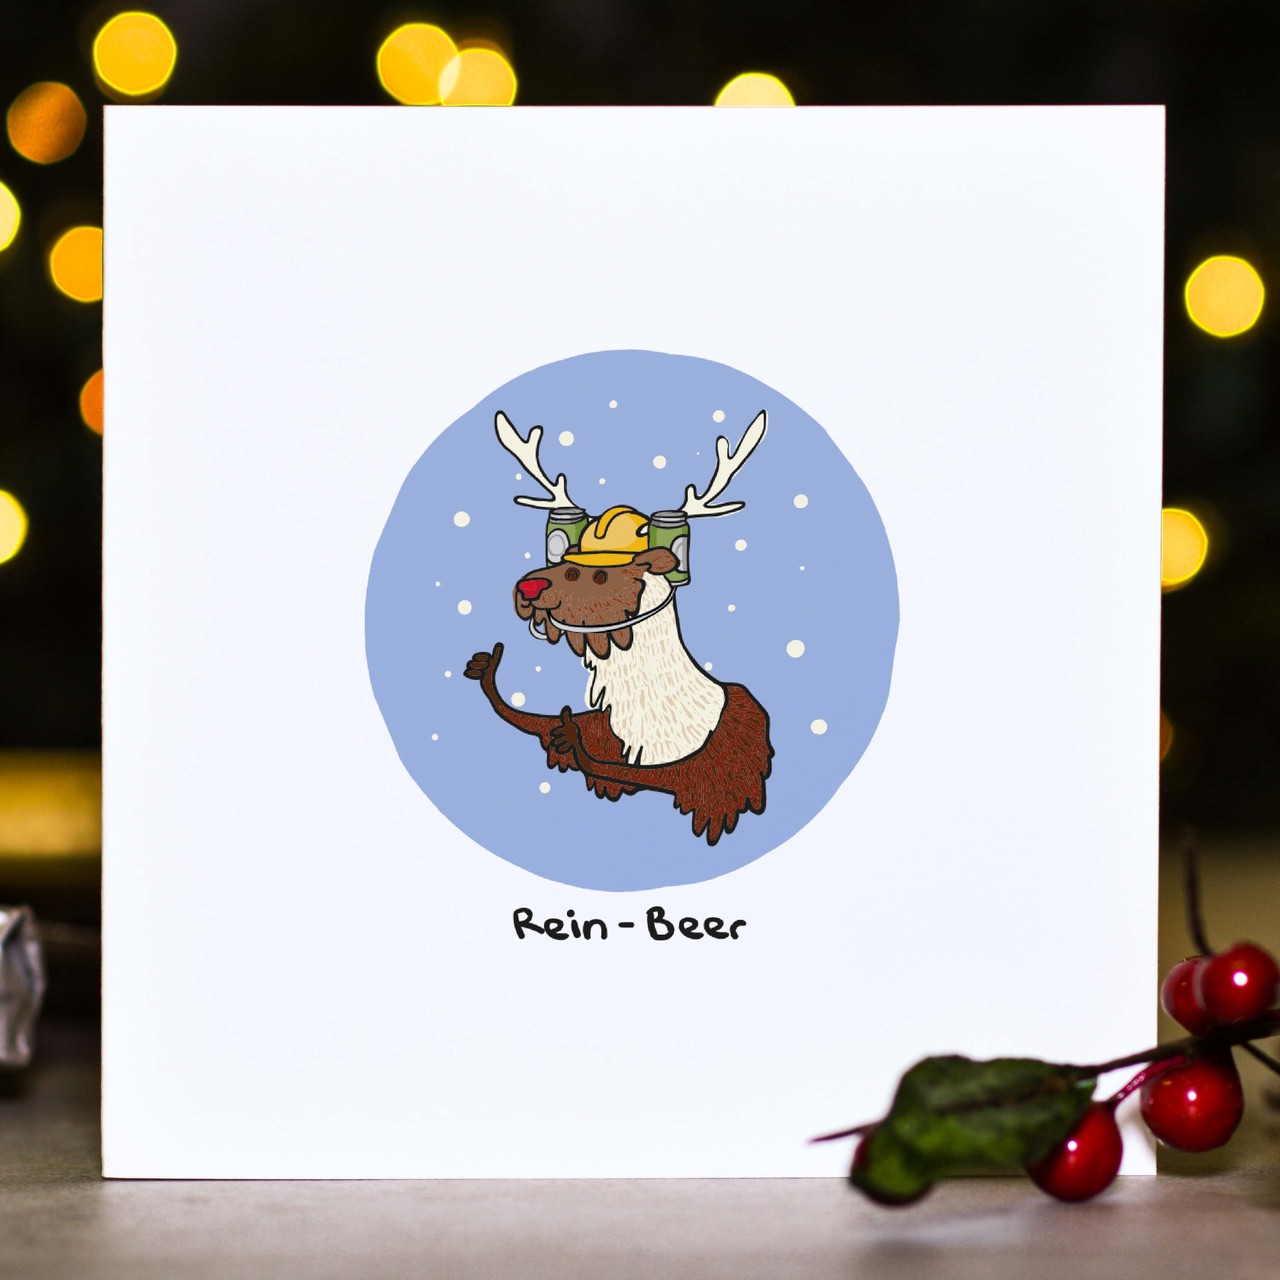 Rein-Beer Christmas Card